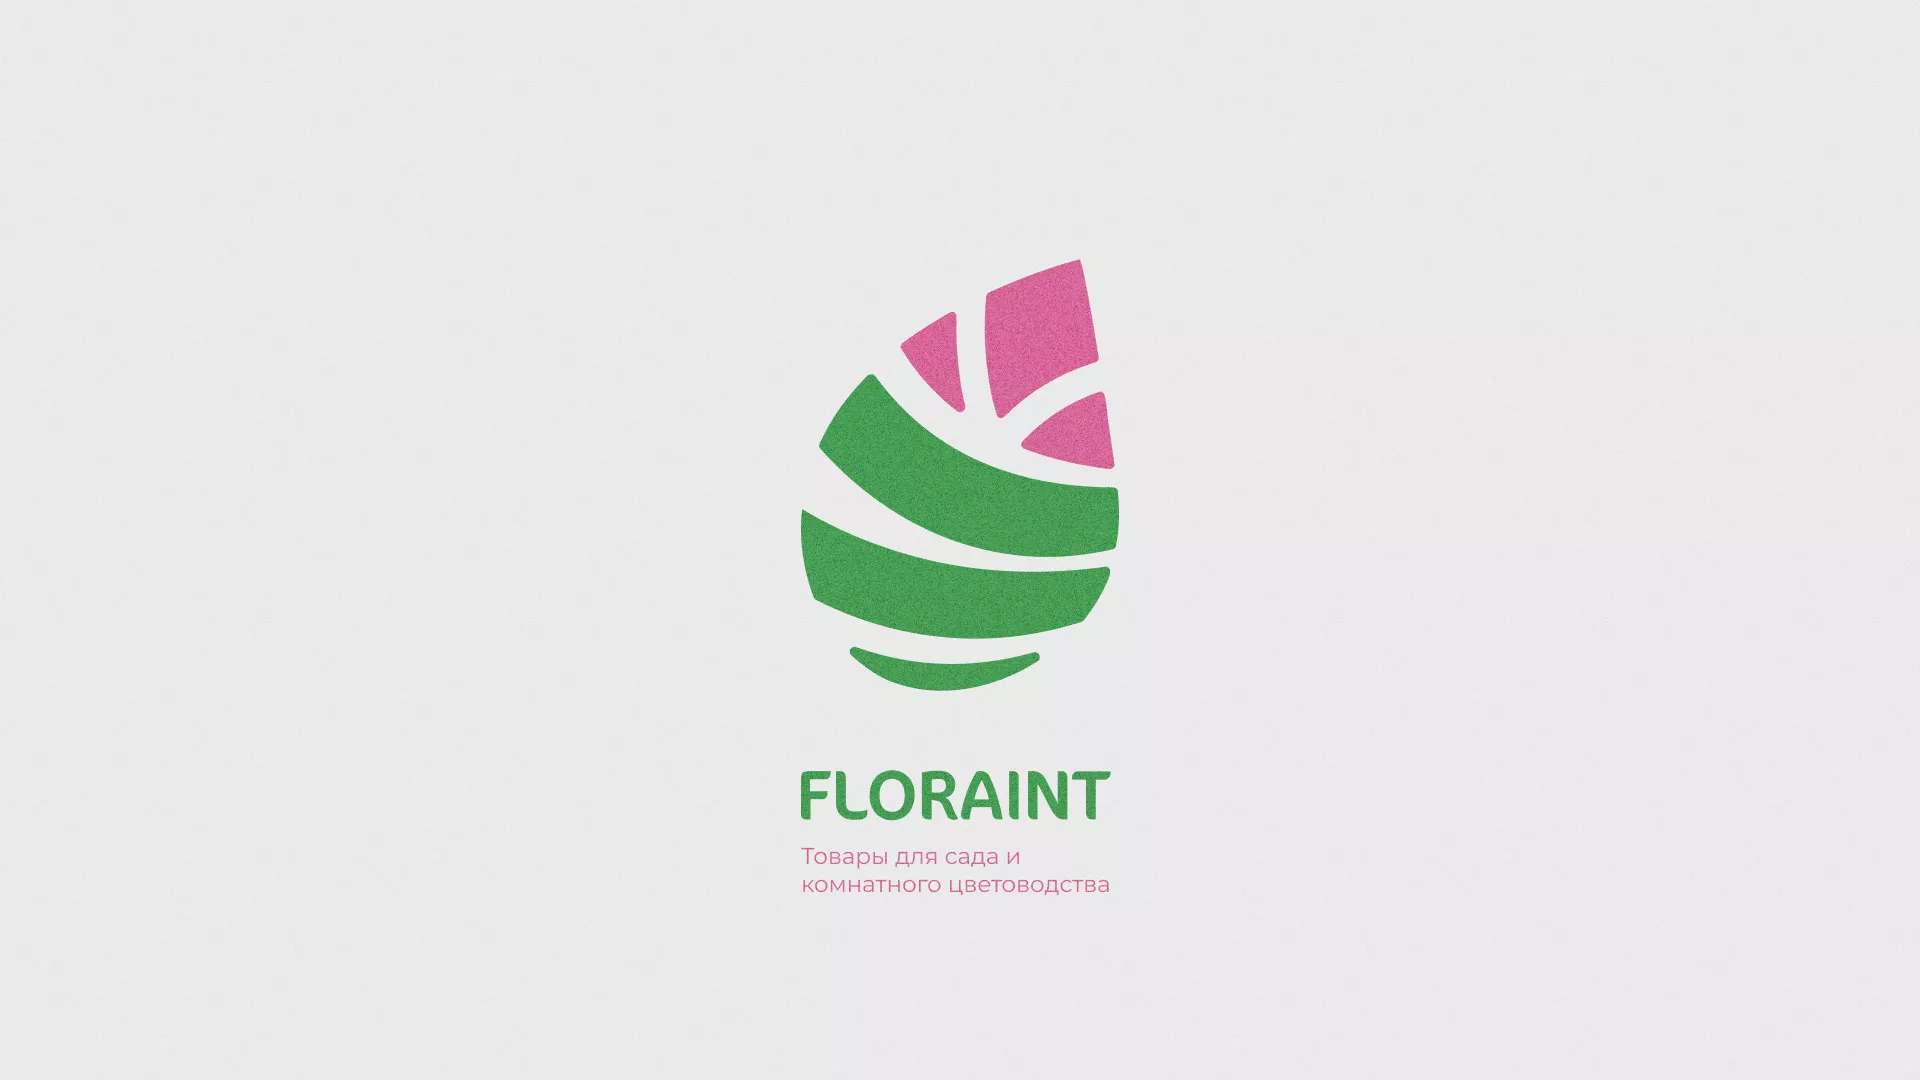 Разработка оформления профиля Instagram для магазина «Floraint» в Дмитриеве